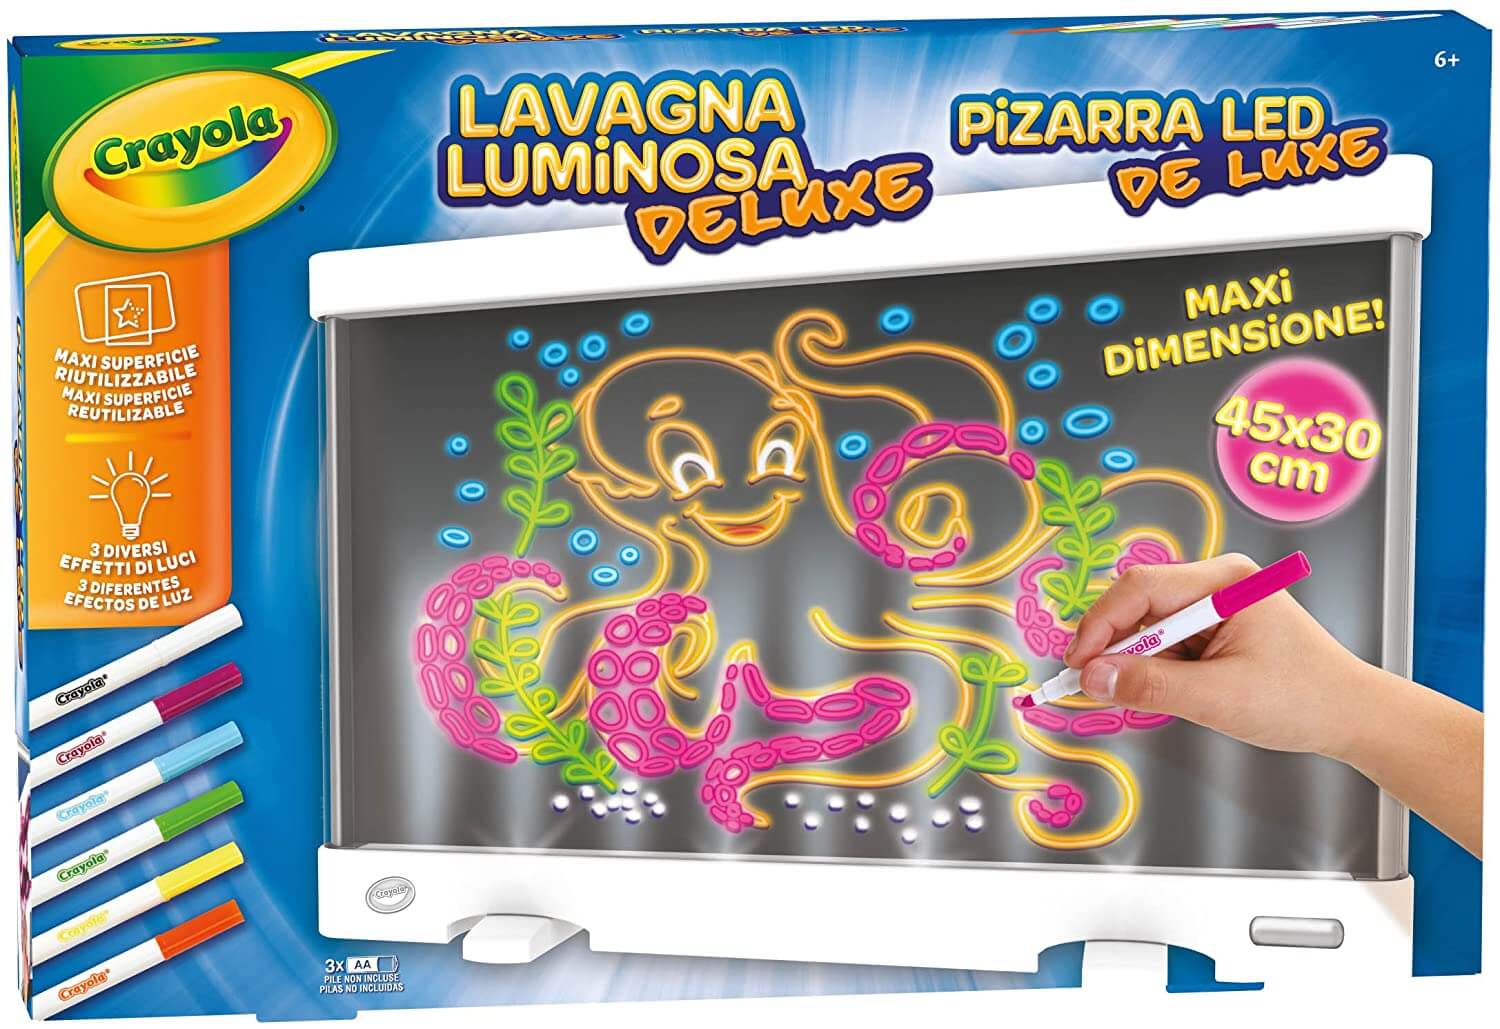 Lavagna Luminosa Deluxe Light Board - Crayola – poptoys.it